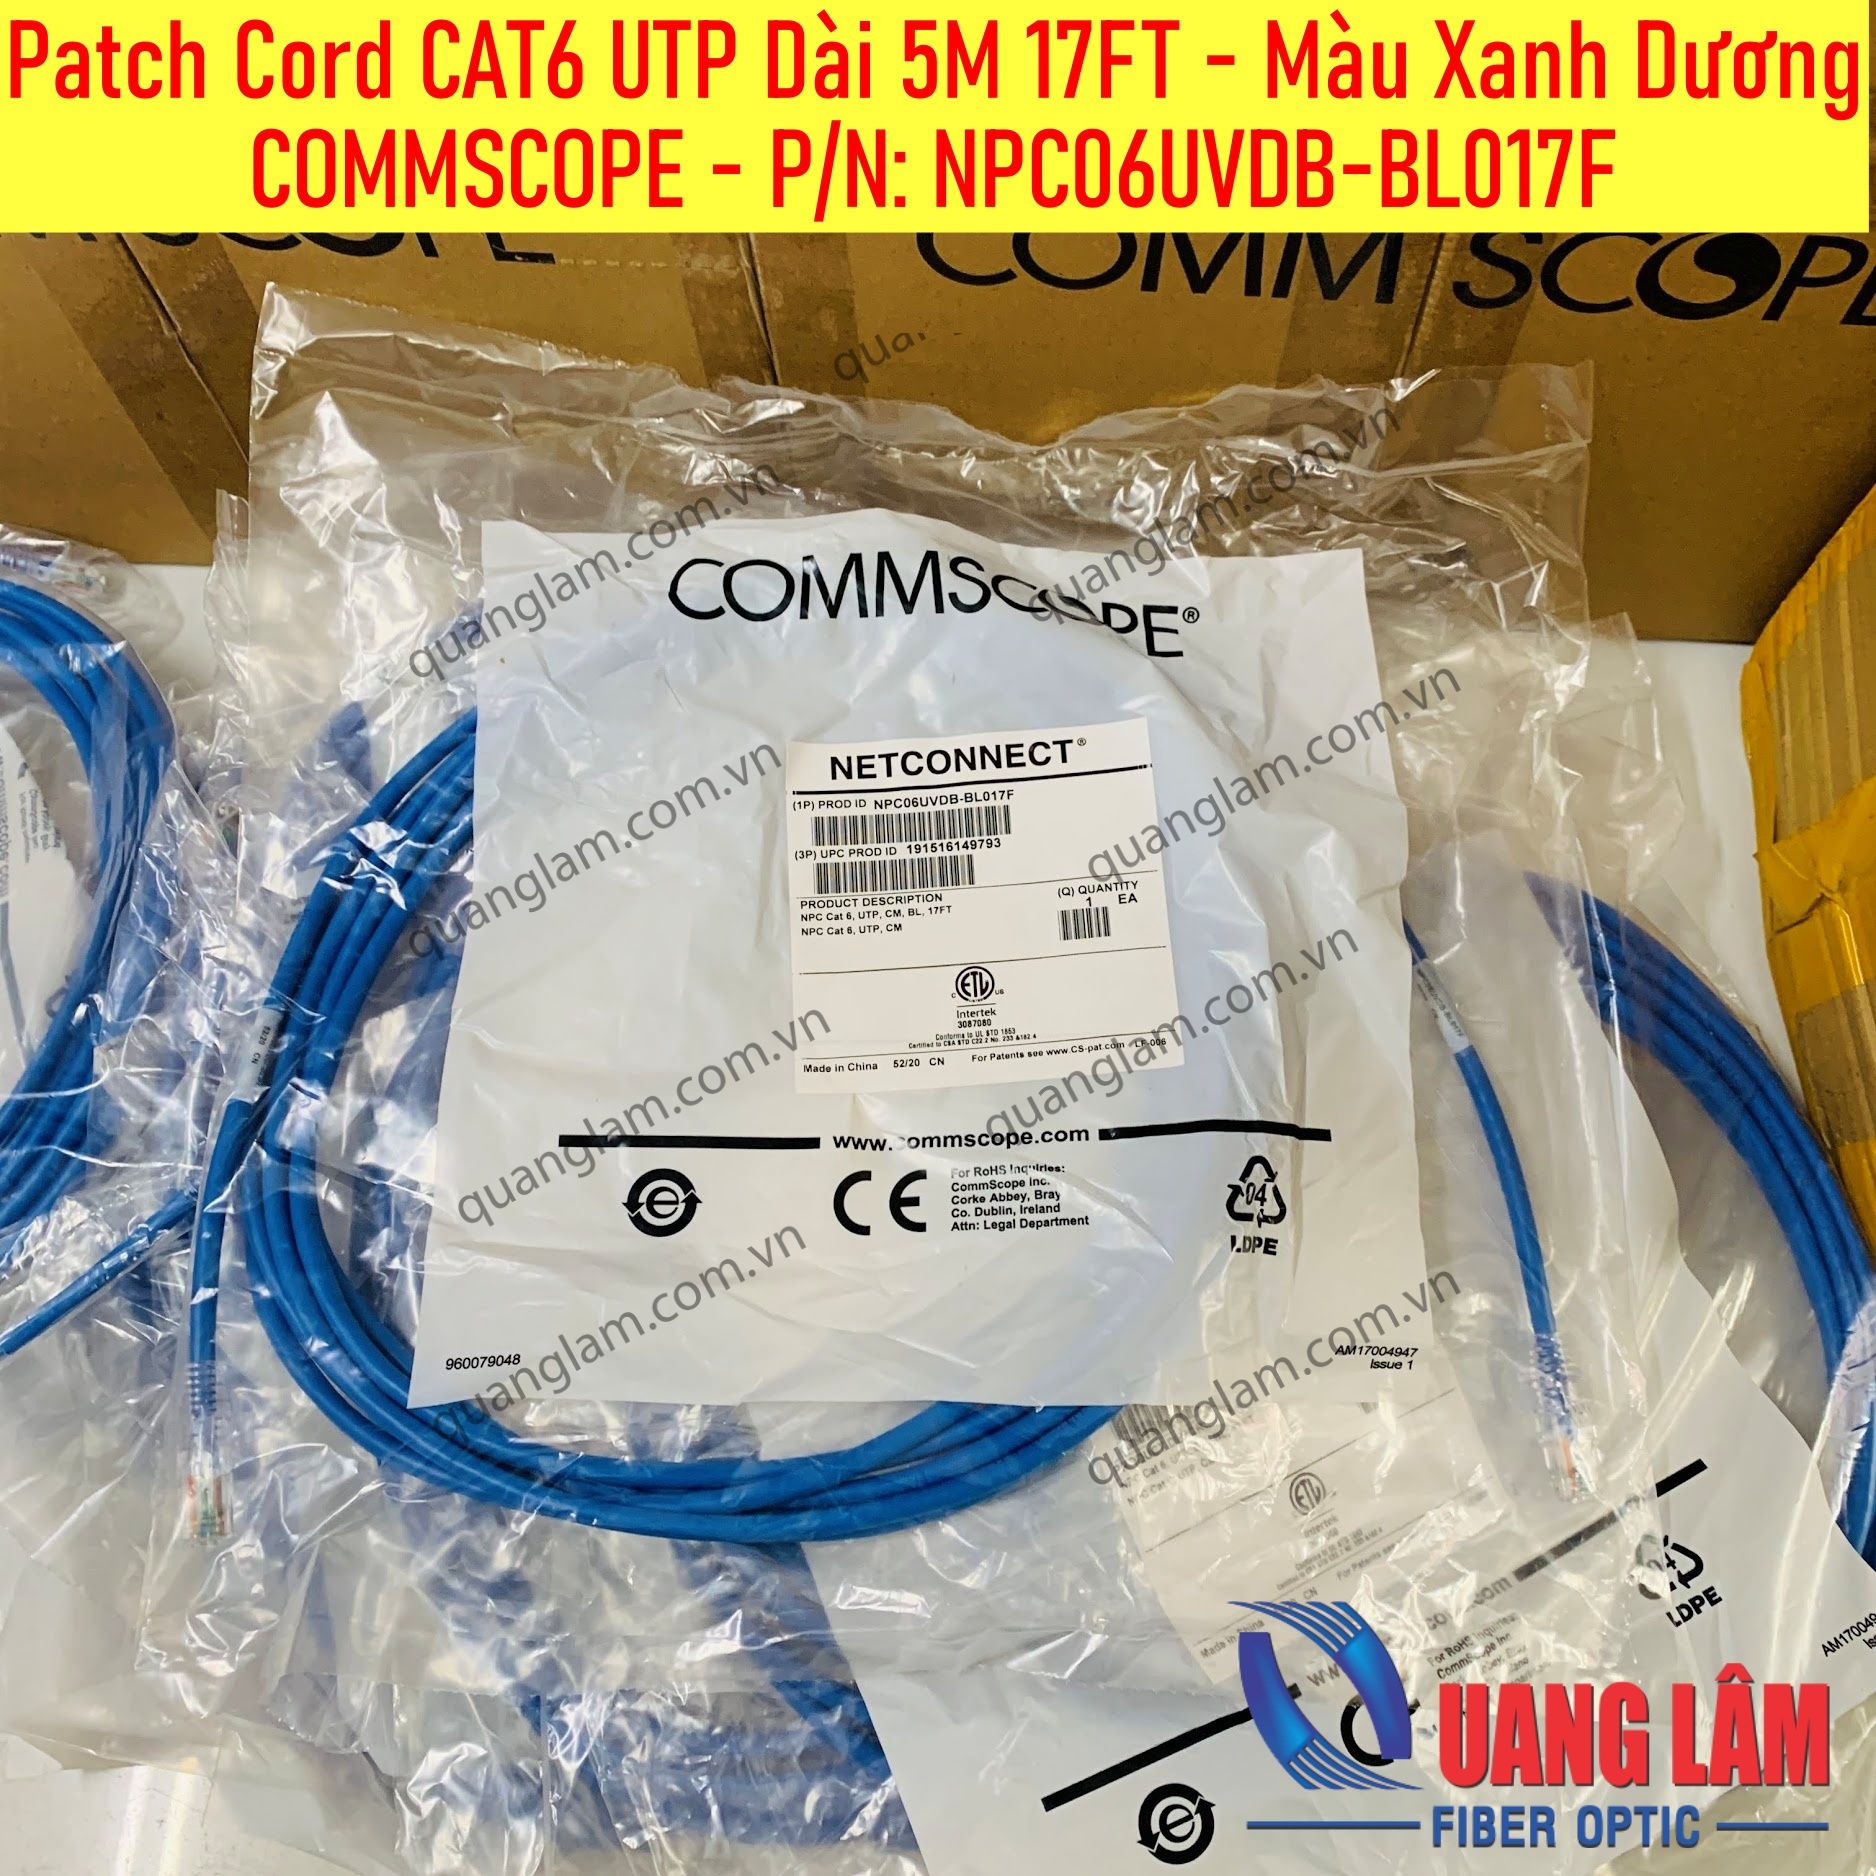 Patch Cord CAT6 UTP Dài 5M 17FT - Màu Xanh Dương COMMSCOPE - P/N: NPC06UVDB-BL017F